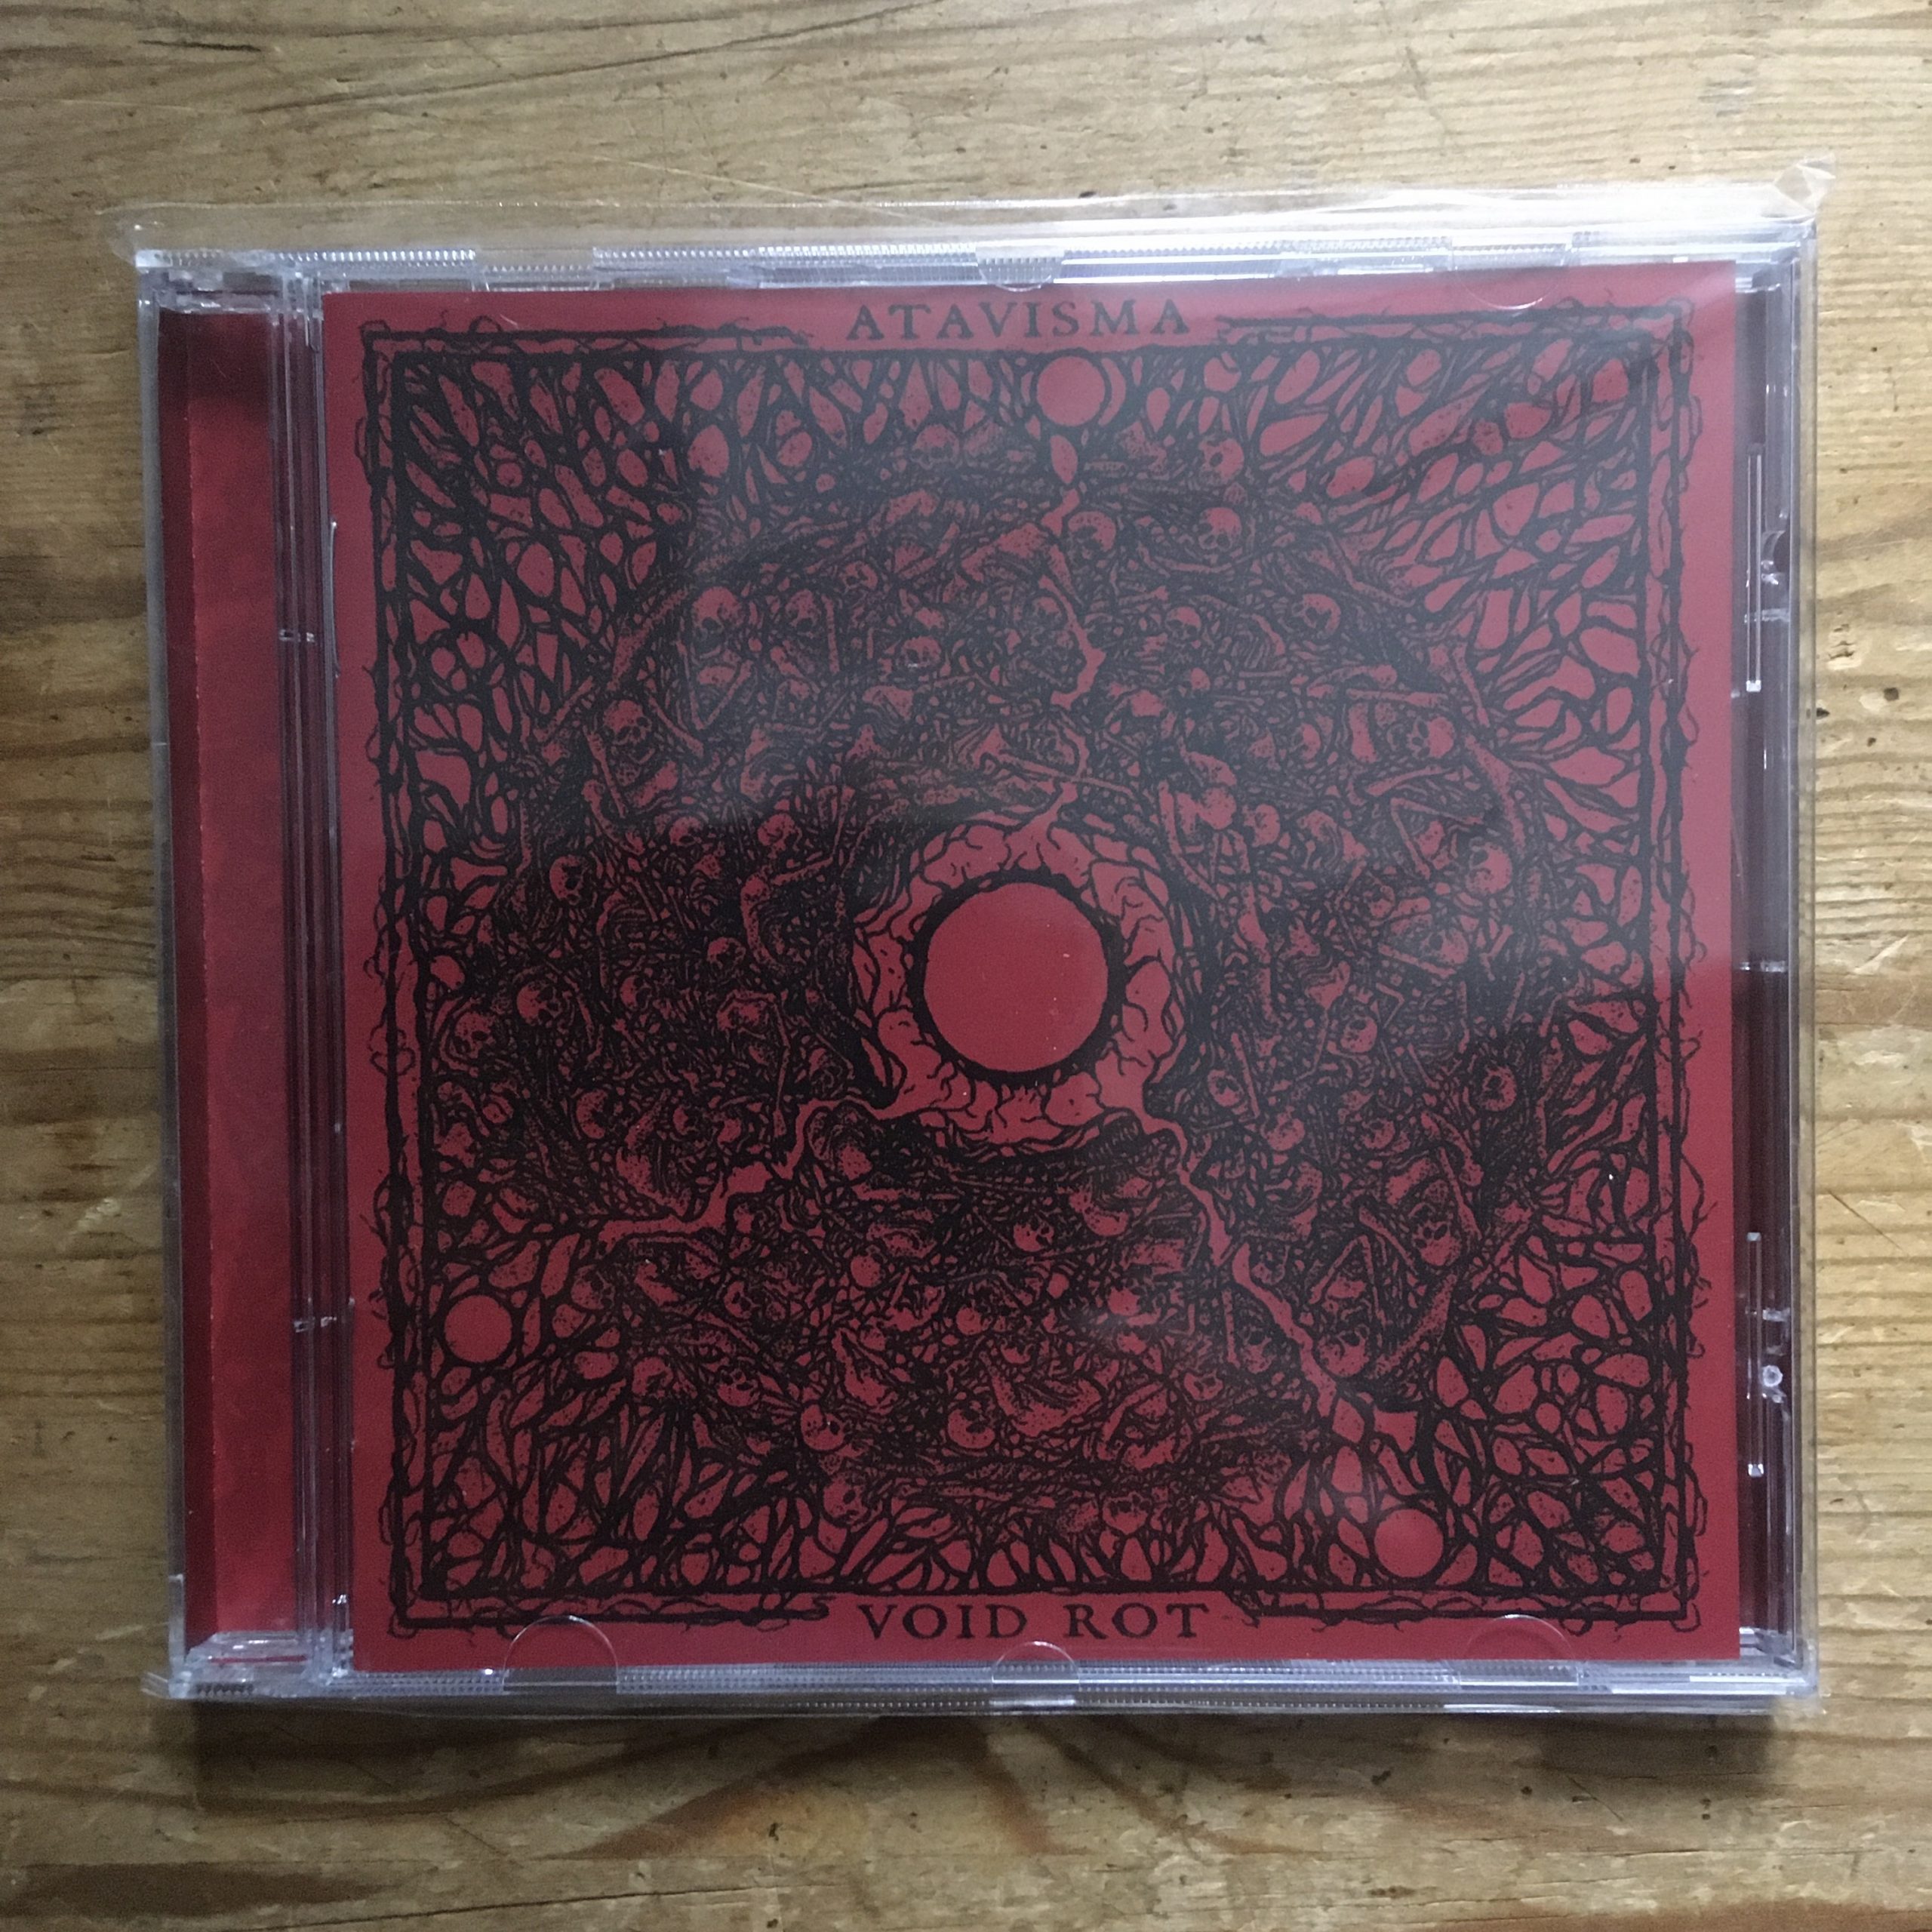 Photo of the Atavisma / Void Rot - "split" CD